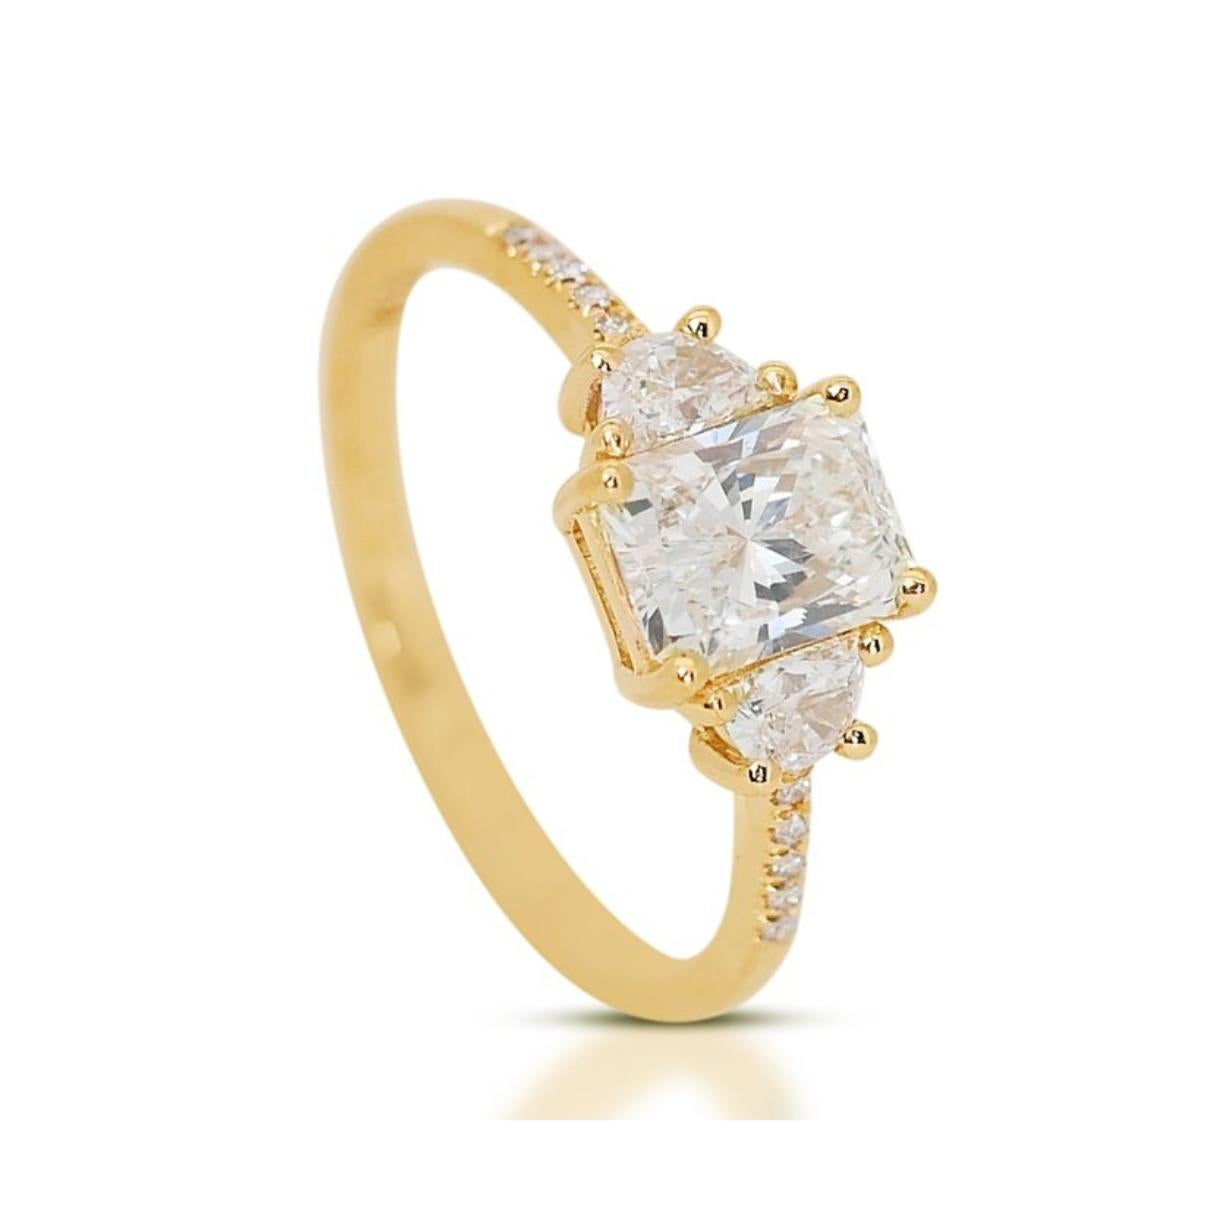 Ideal geschnitten Radiant 3 Steine Ring mit Halbmonde aus 18k Gelbgold Diamant Pave Ring w/1,36 ct - IGI zertifiziert

Dieser sorgfältig gefertigte Ring aus 18 Karat Gelbgold mit Diamanten in Pflasterung ist der Inbegriff von Luxus und Raffinesse.